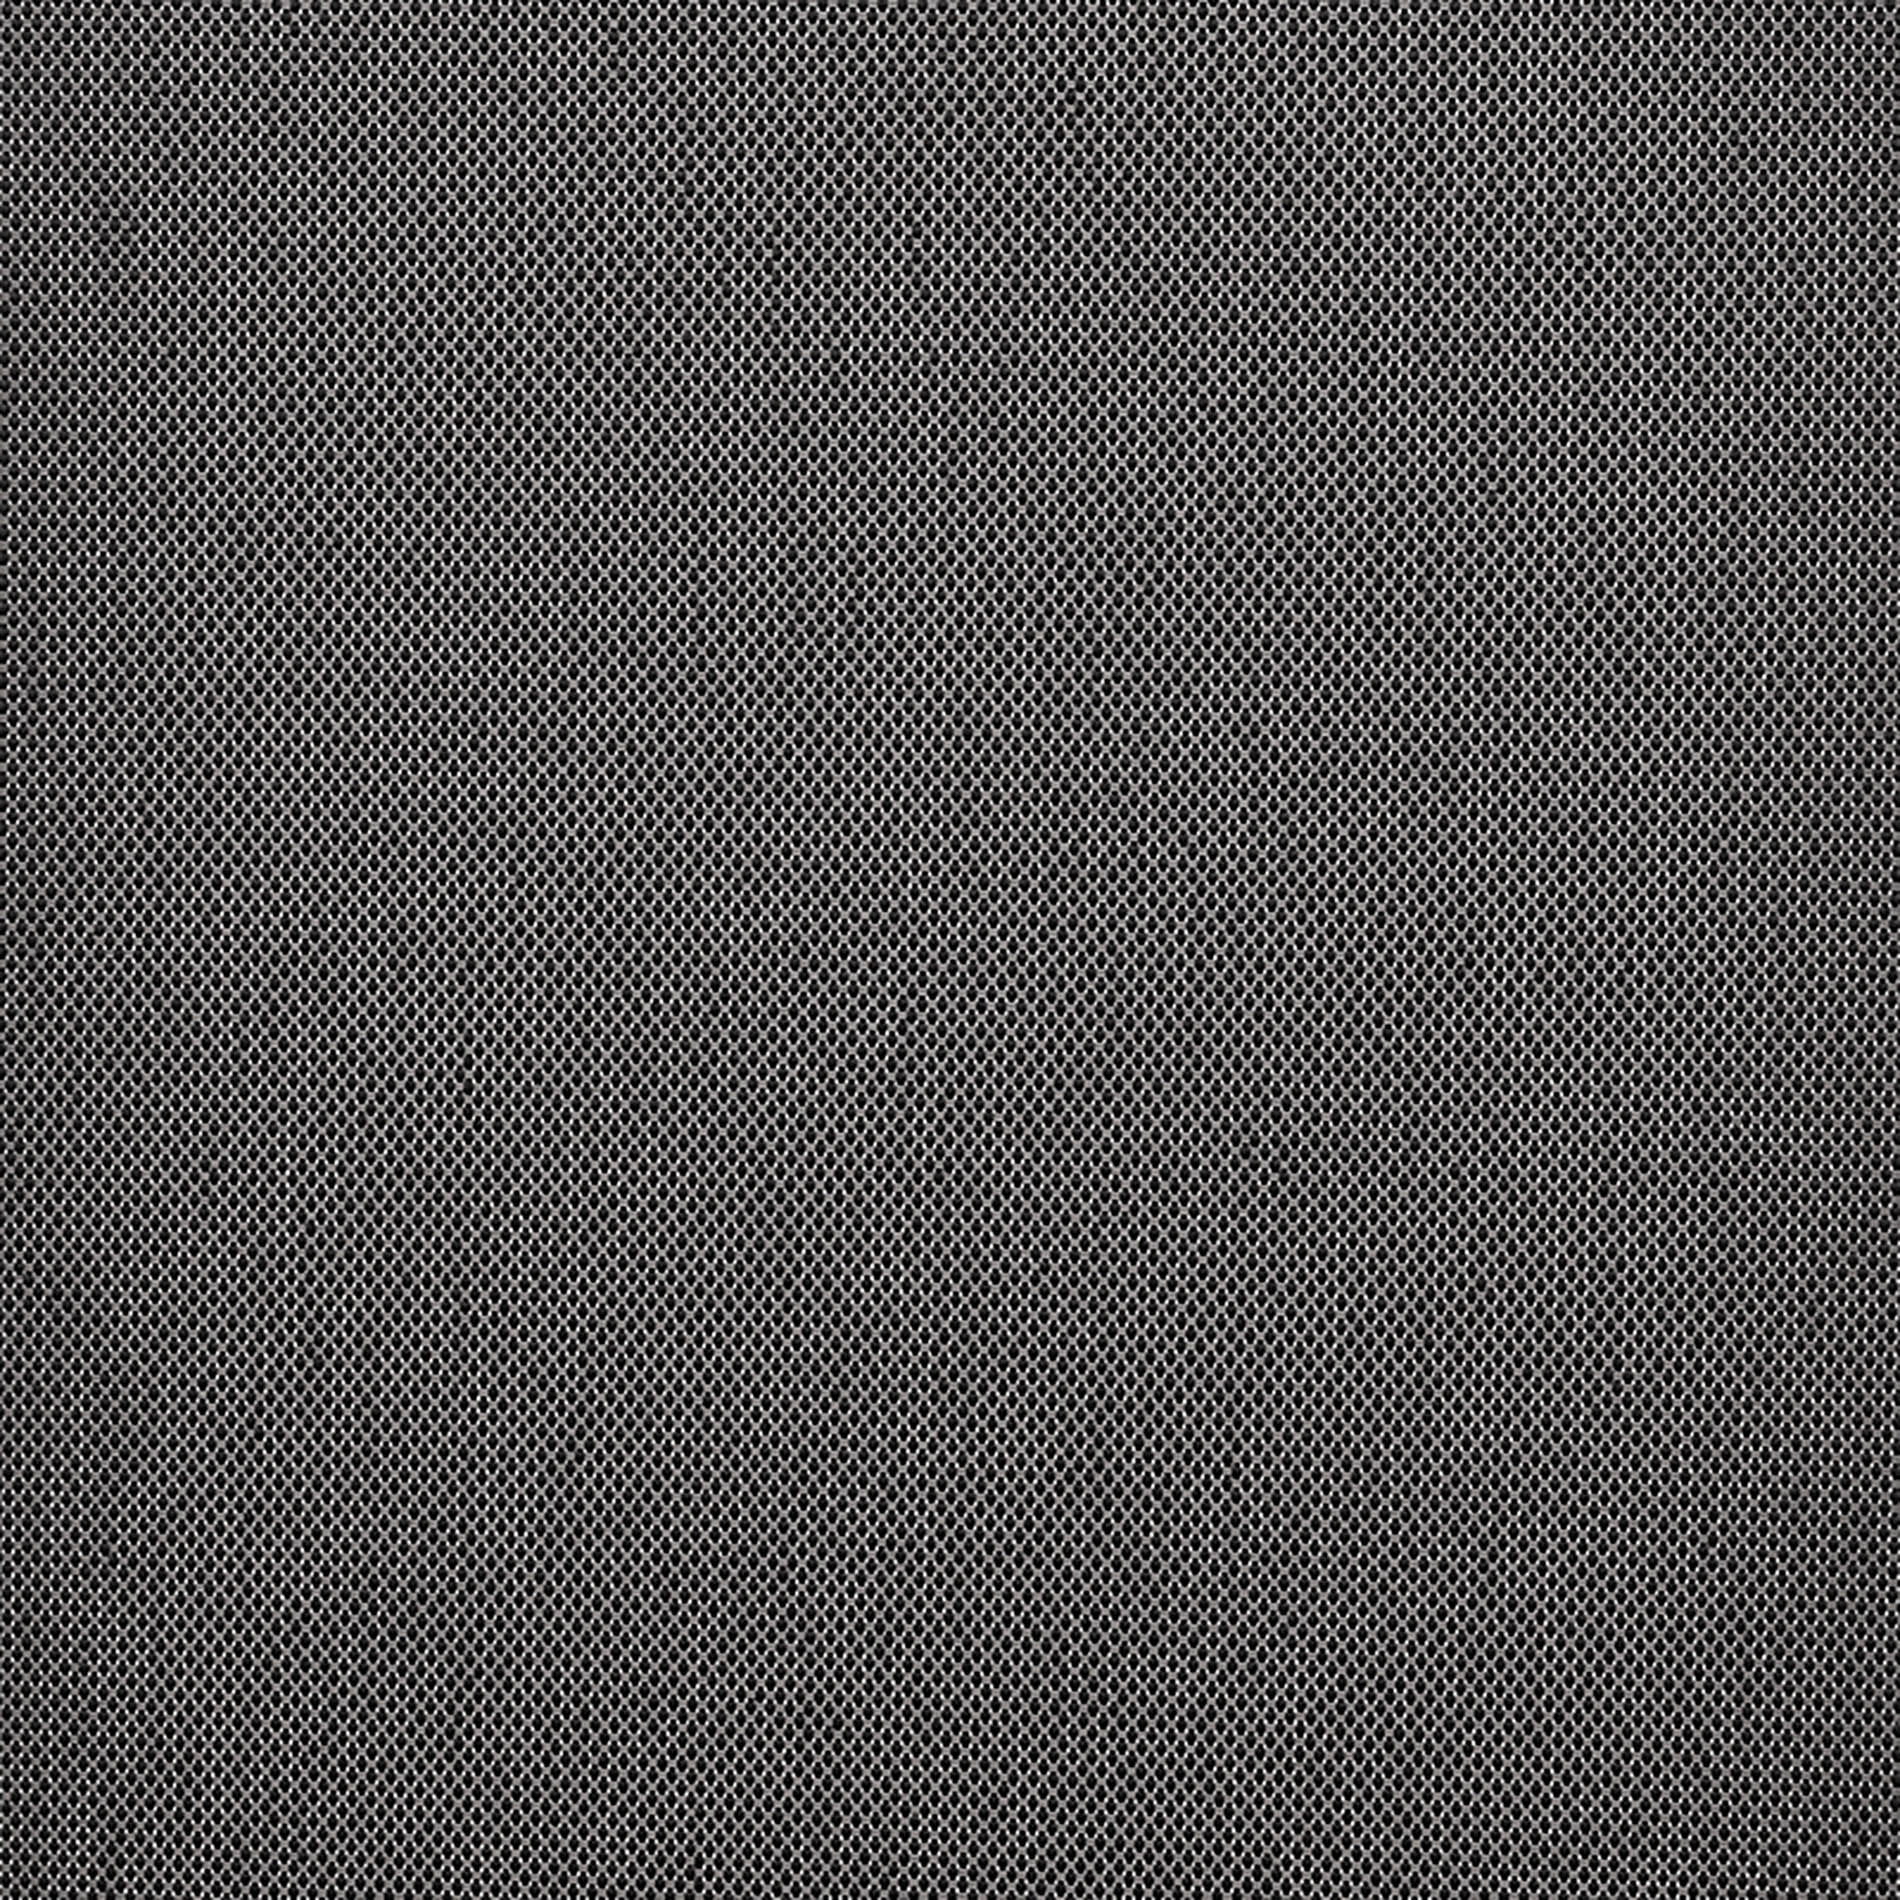 Altex - Fabric - ARGON_1 - Charcoal/Grey - ARGON_104